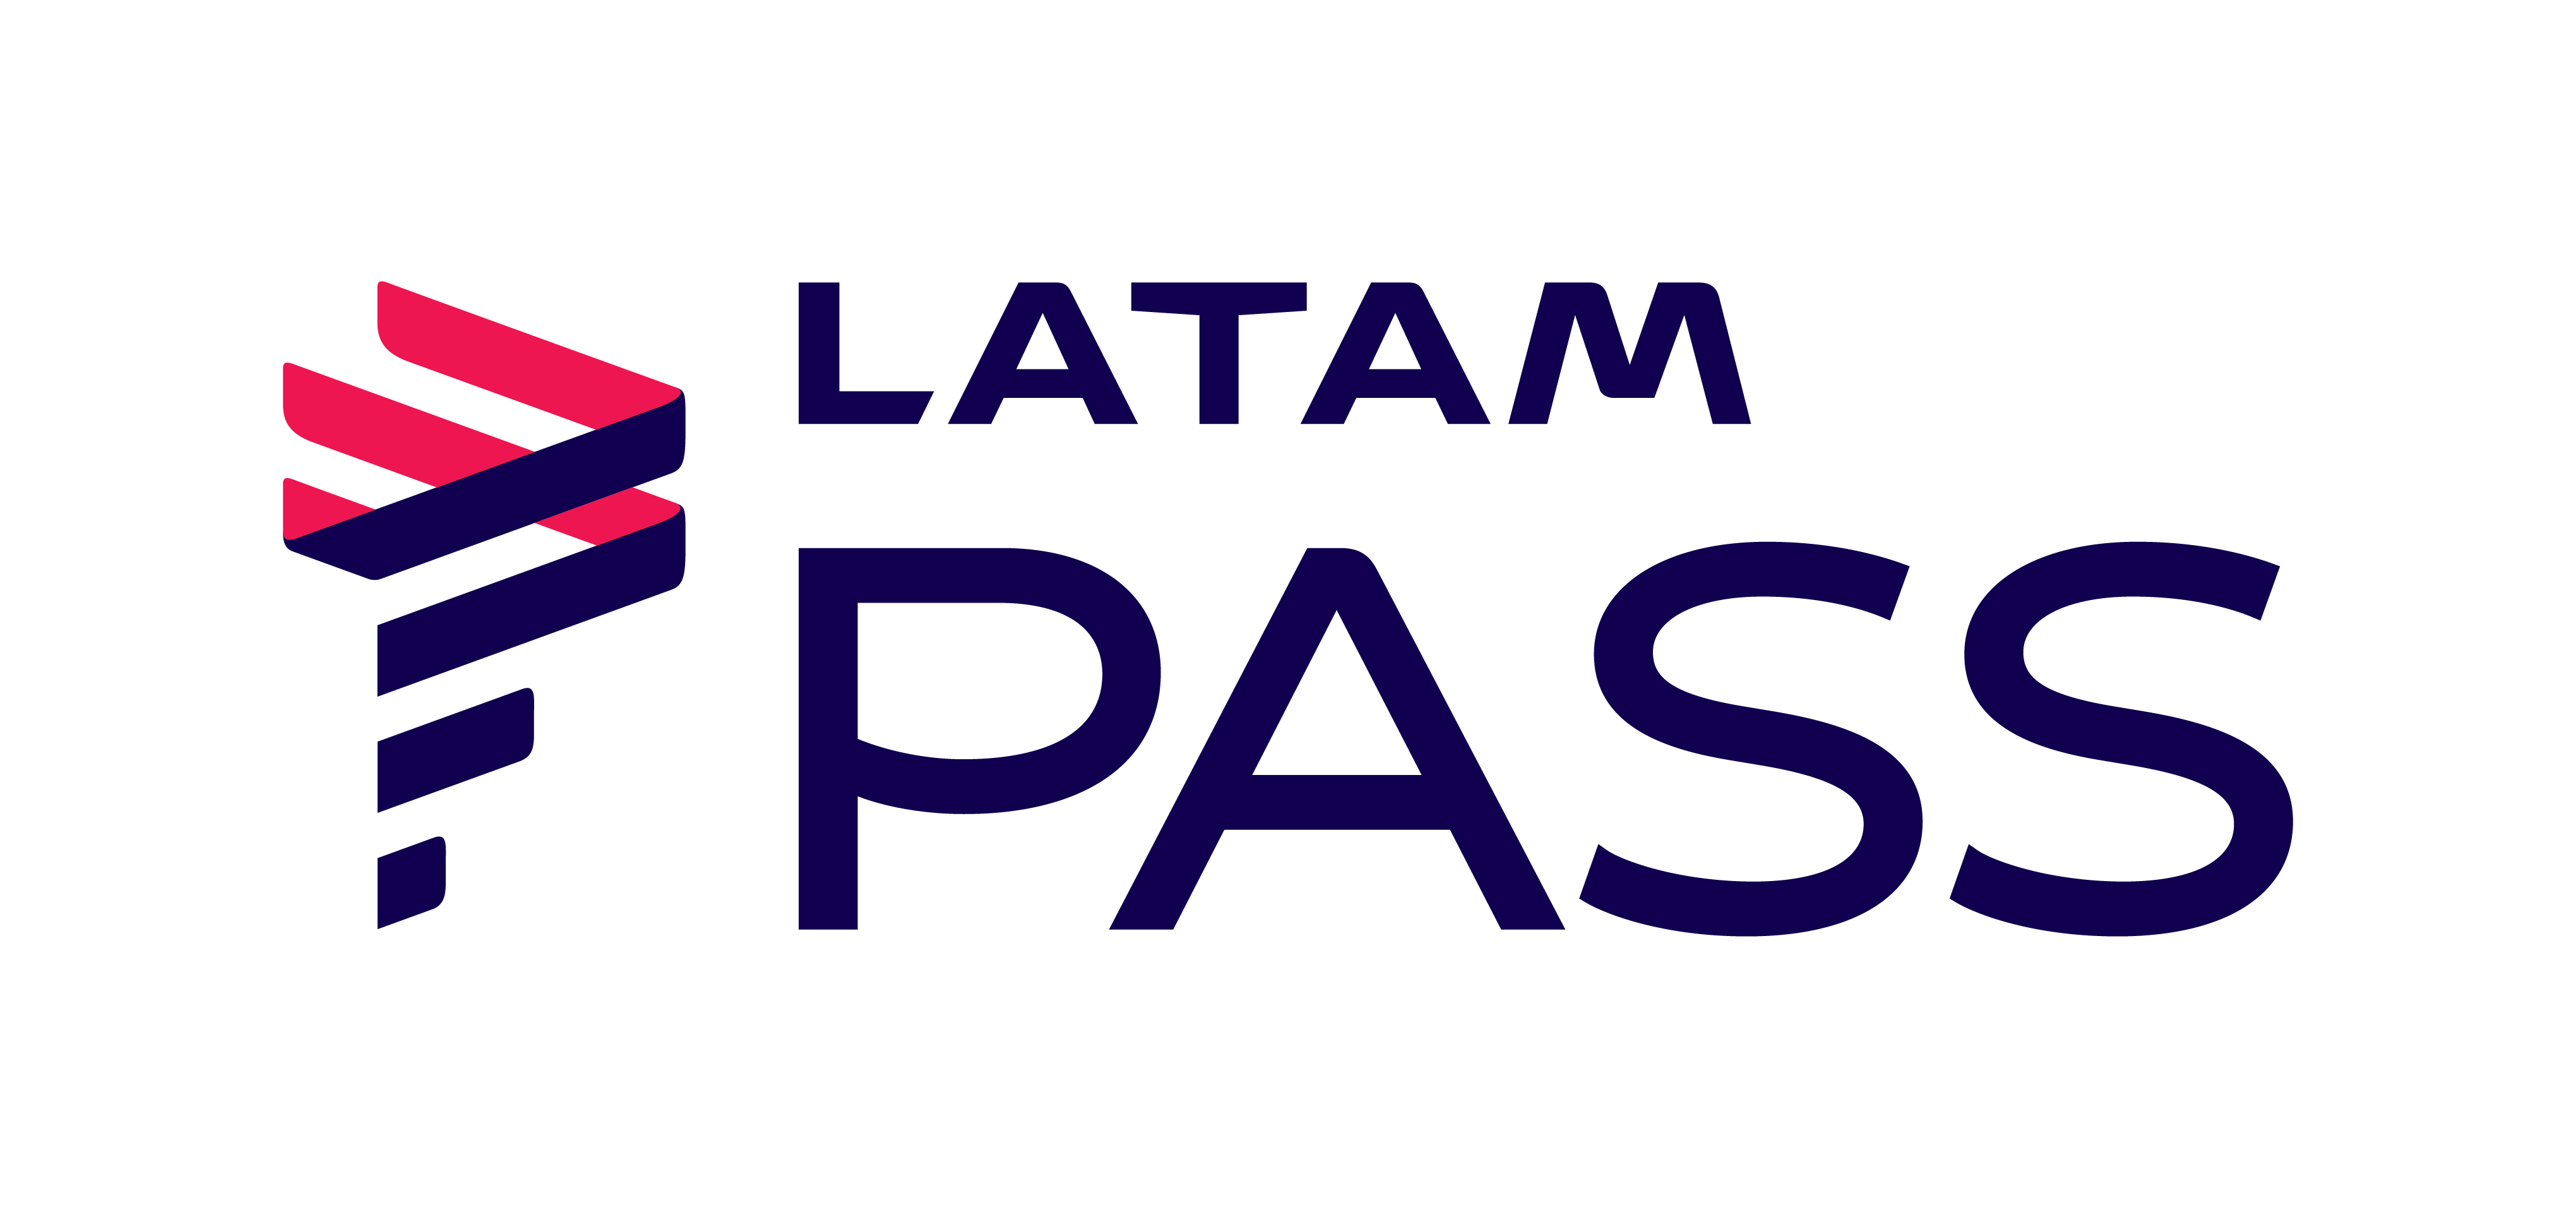 Mas, afinal, o cartão de crédito Latam Pass Itaucard Black vale a pena? Fonte: Latam Pass.